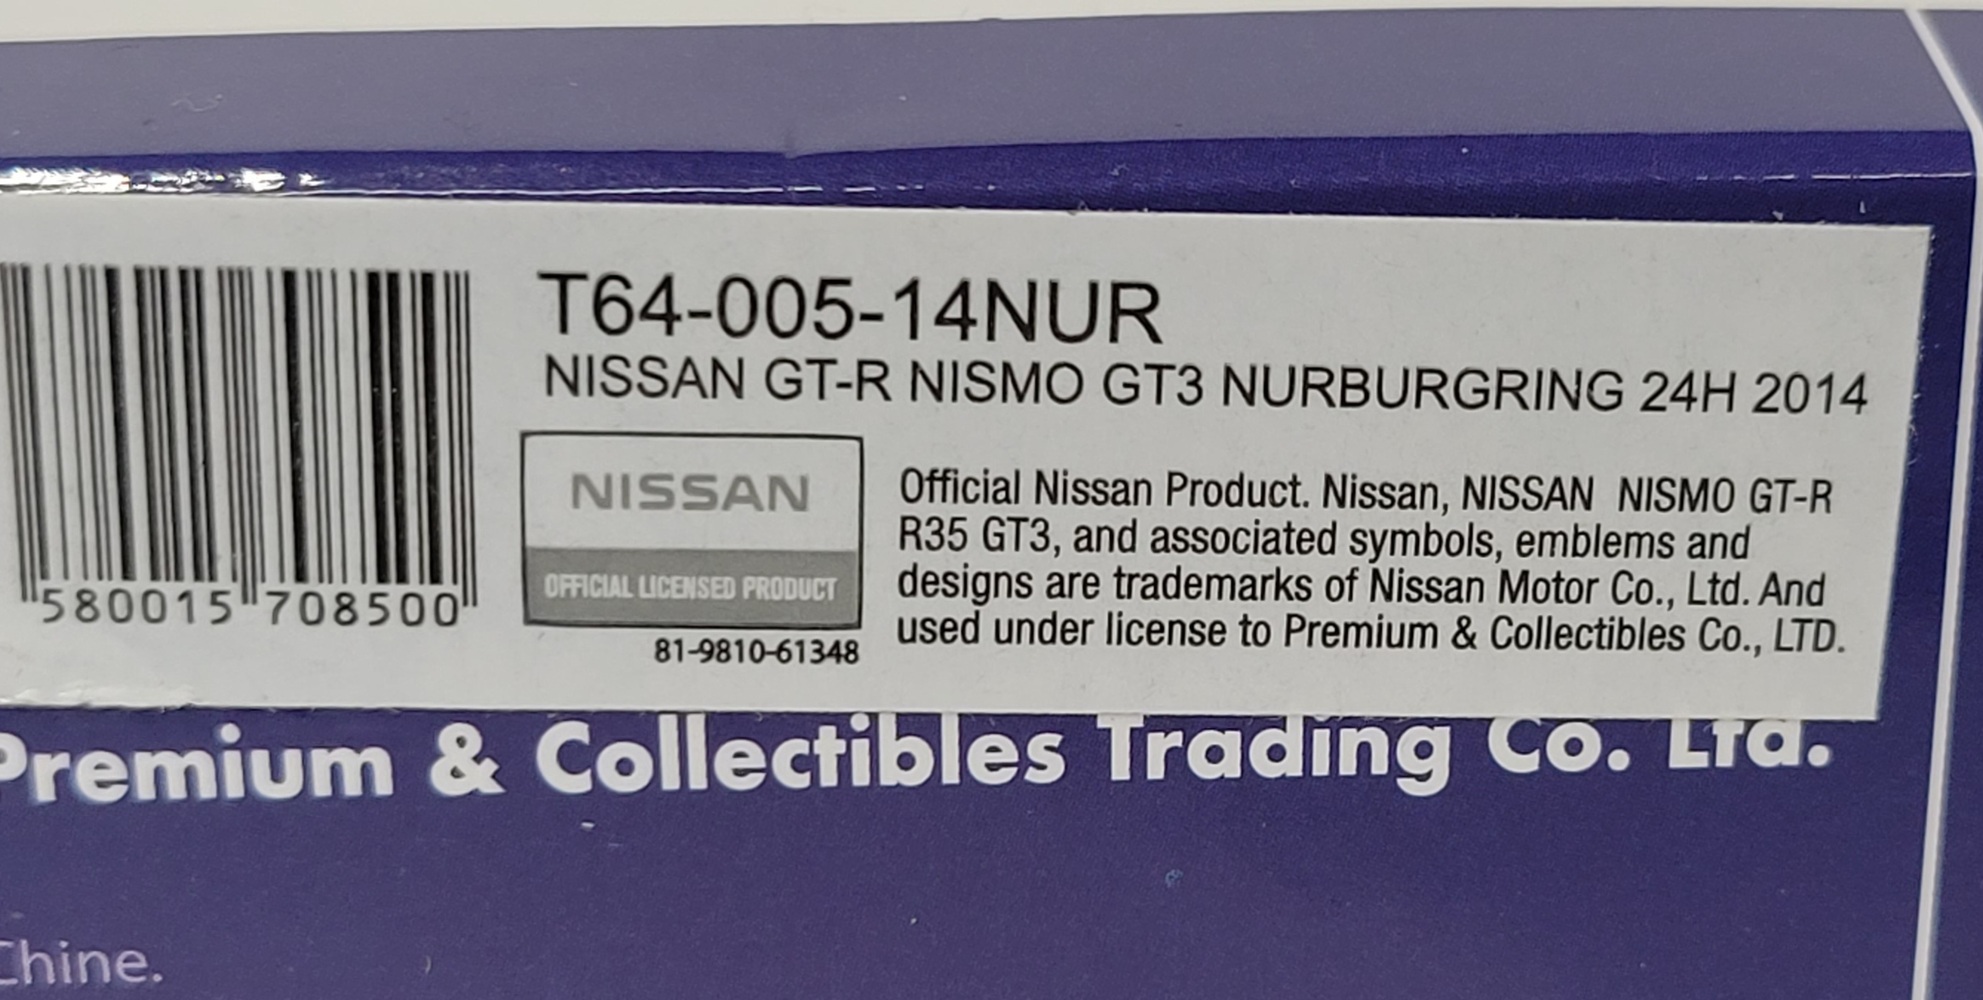 Tarmac Works Nissan GT-R Nismo GT3 Nurburgring 23H 2014 Hobby 64